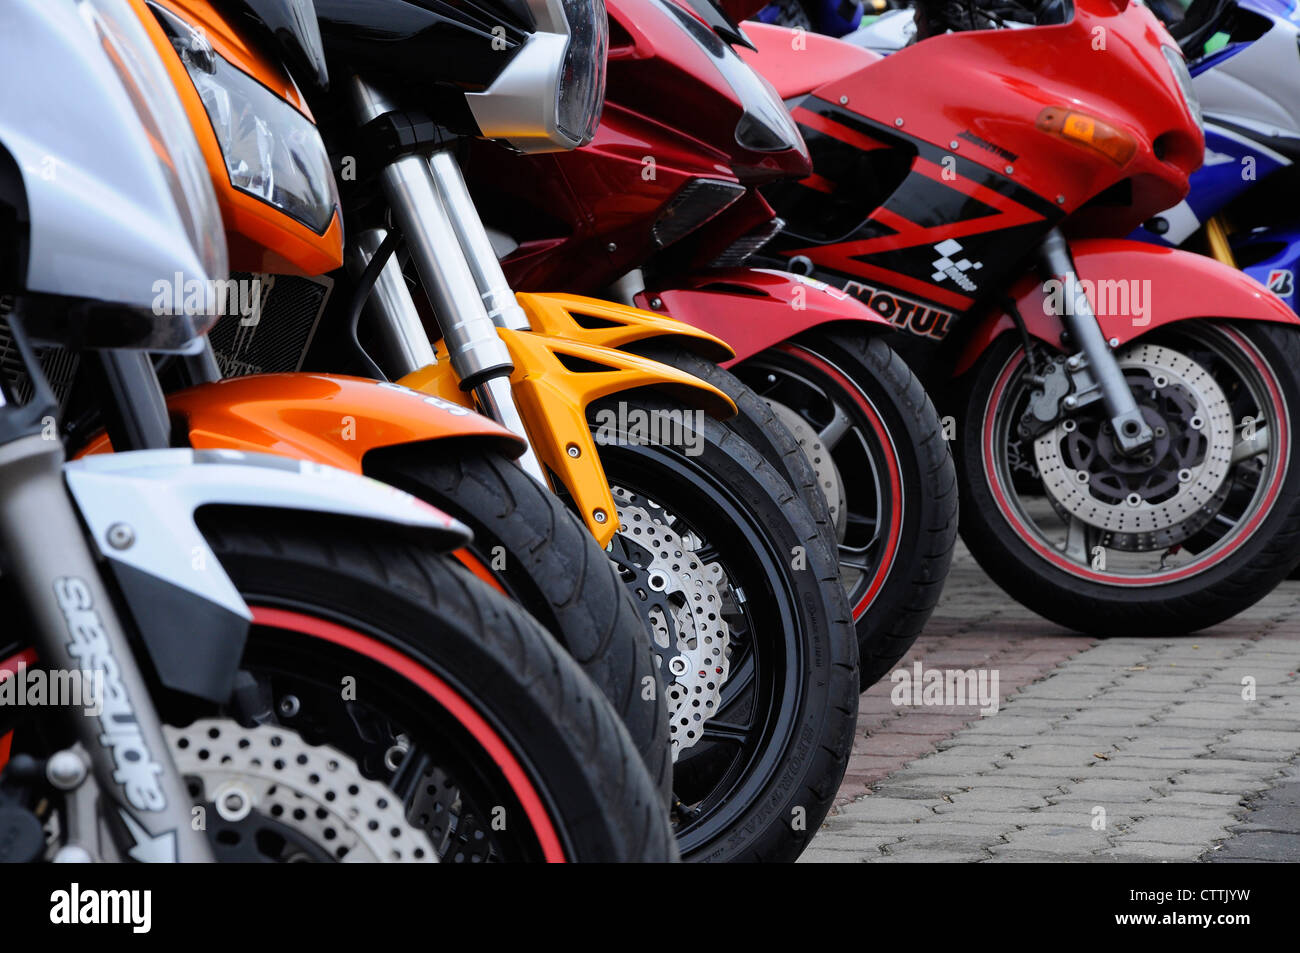 Superbike motercycle parked at Kota Bharu, Kelantan during Kelantan  International Moto Show Stock Photo - Alamy